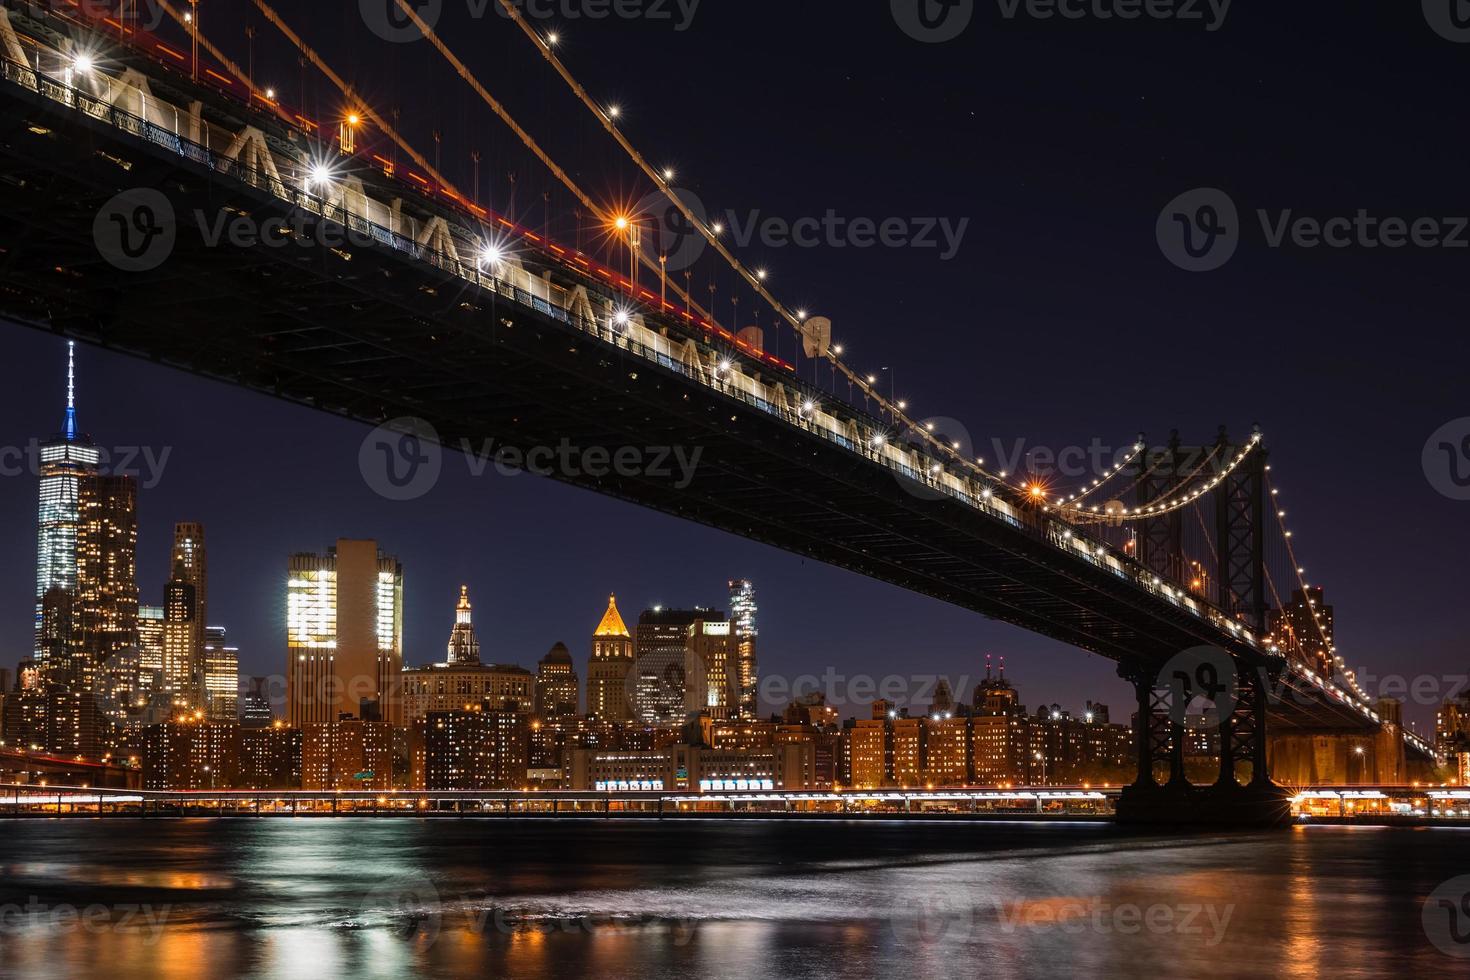 Pont de Manhattan dans la nuit photo